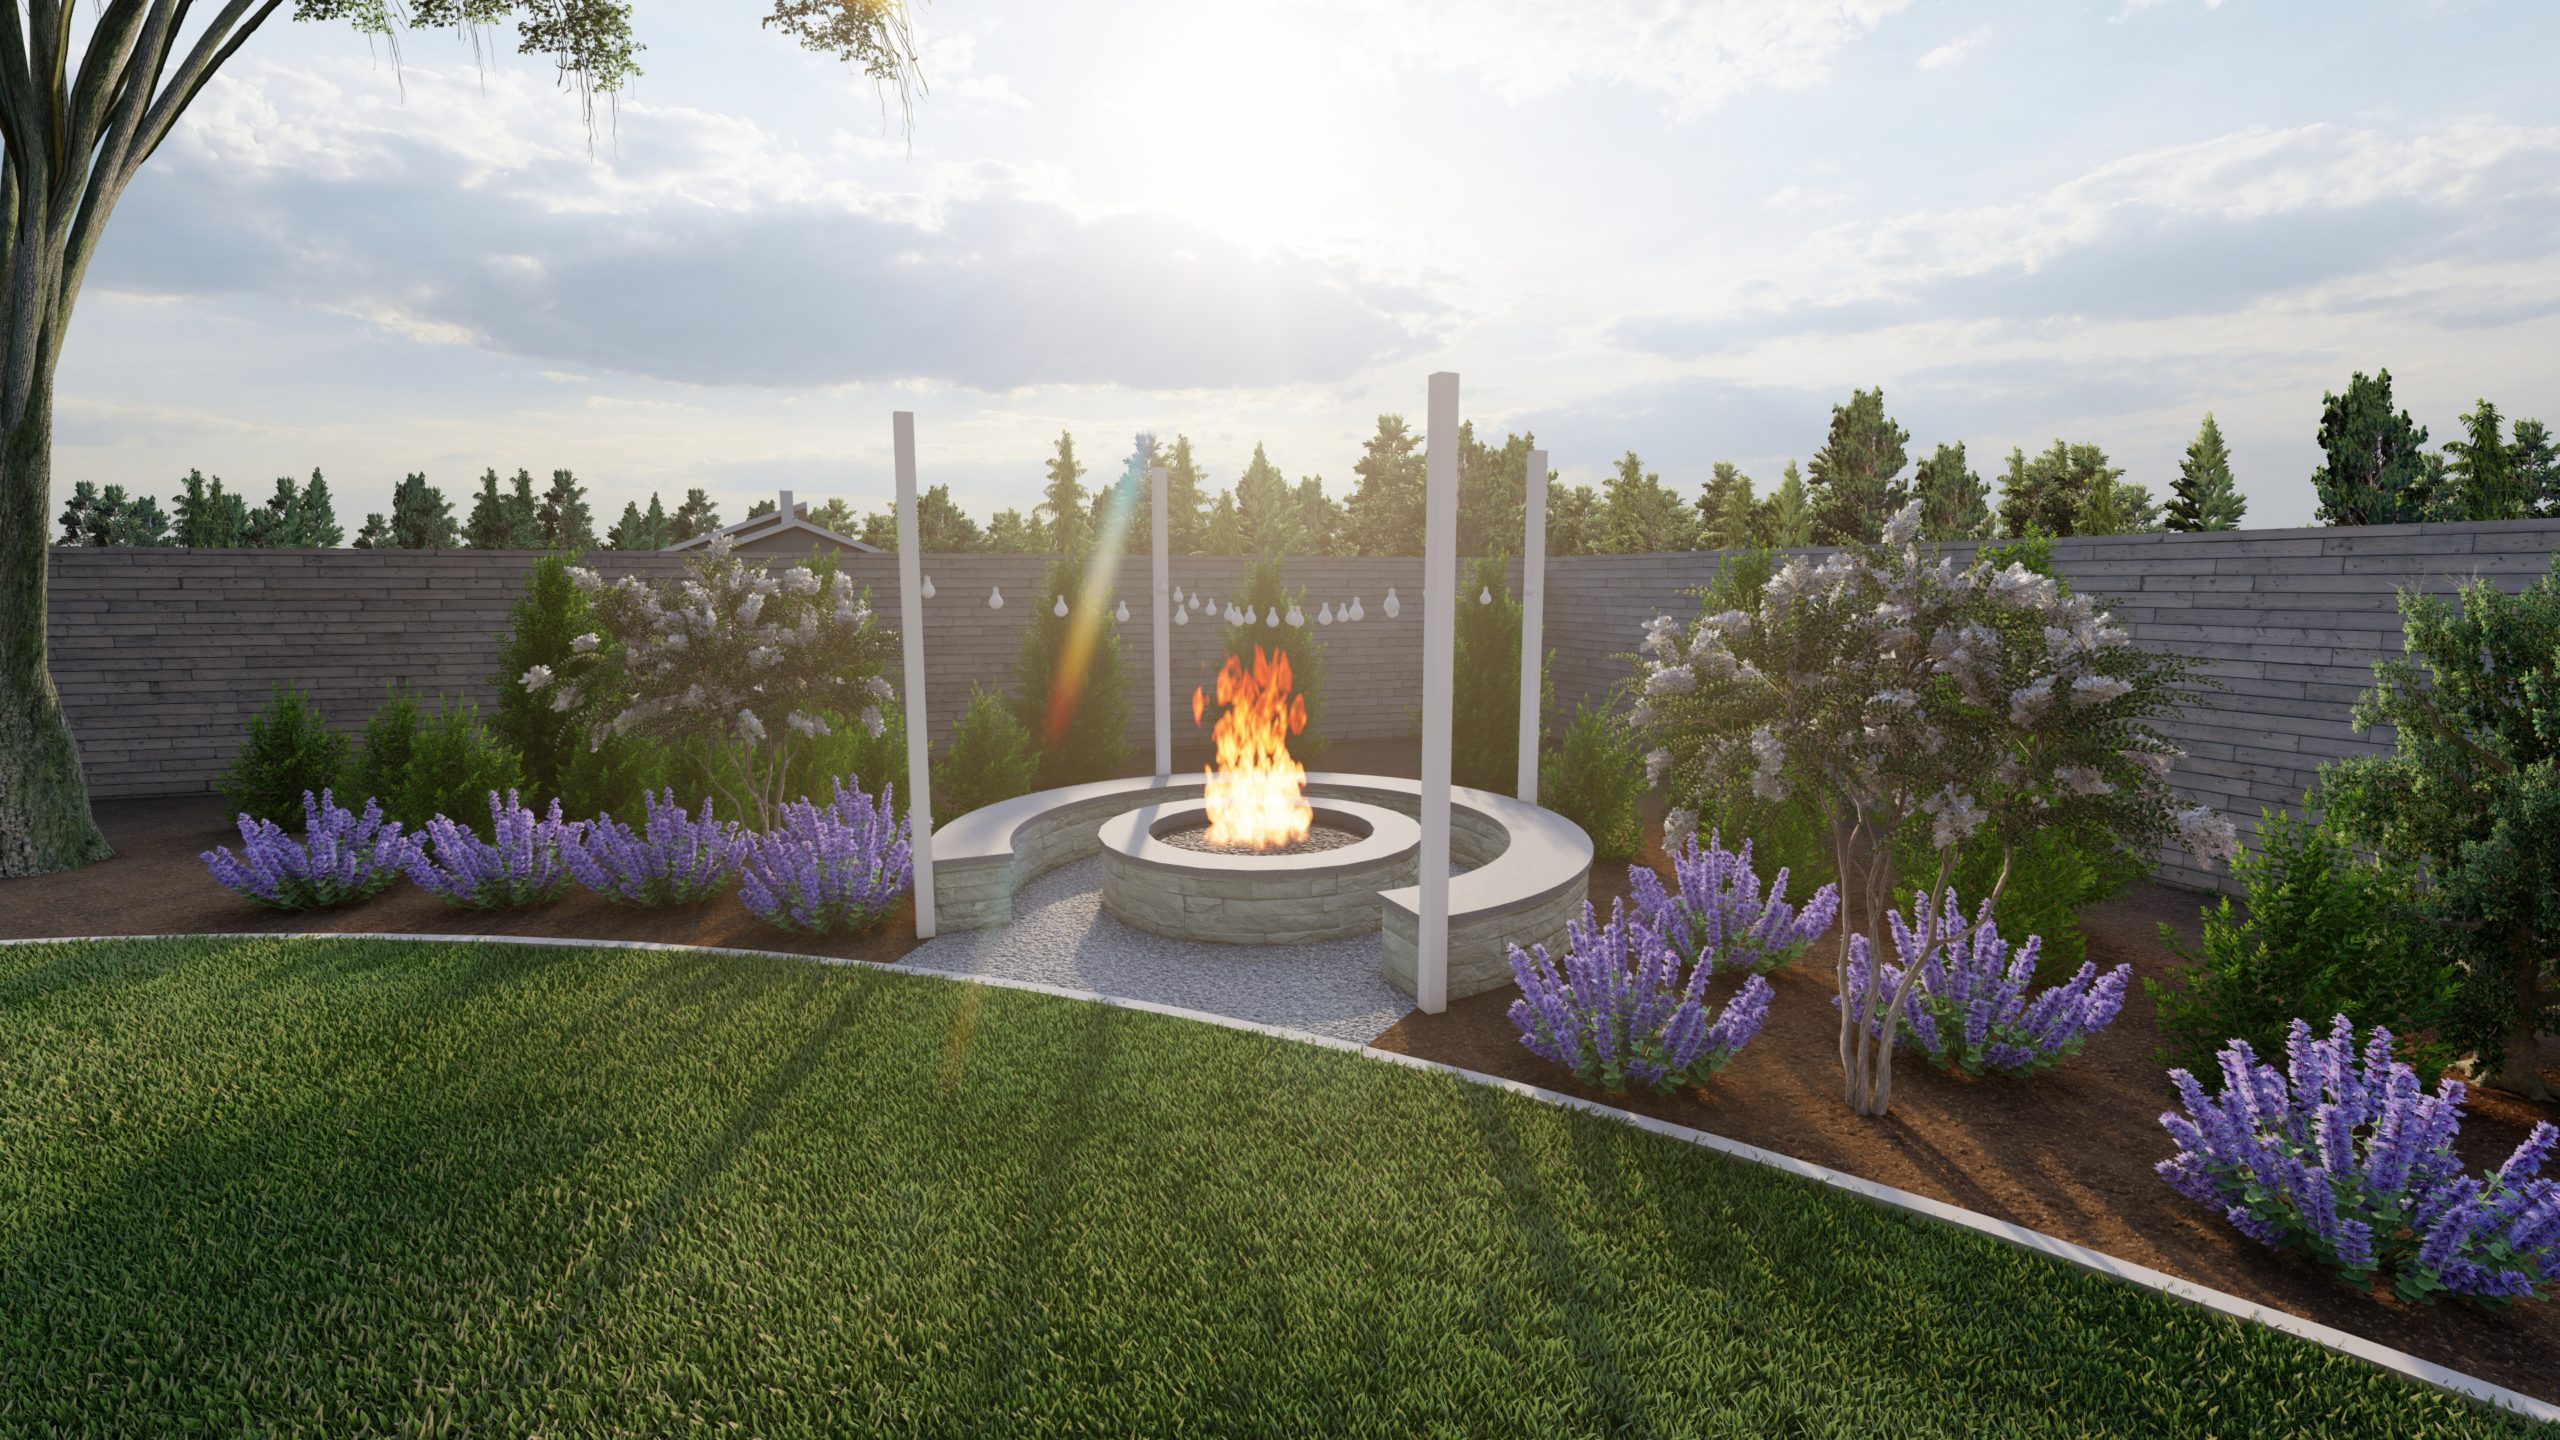 Fire pit design as a garden focal point